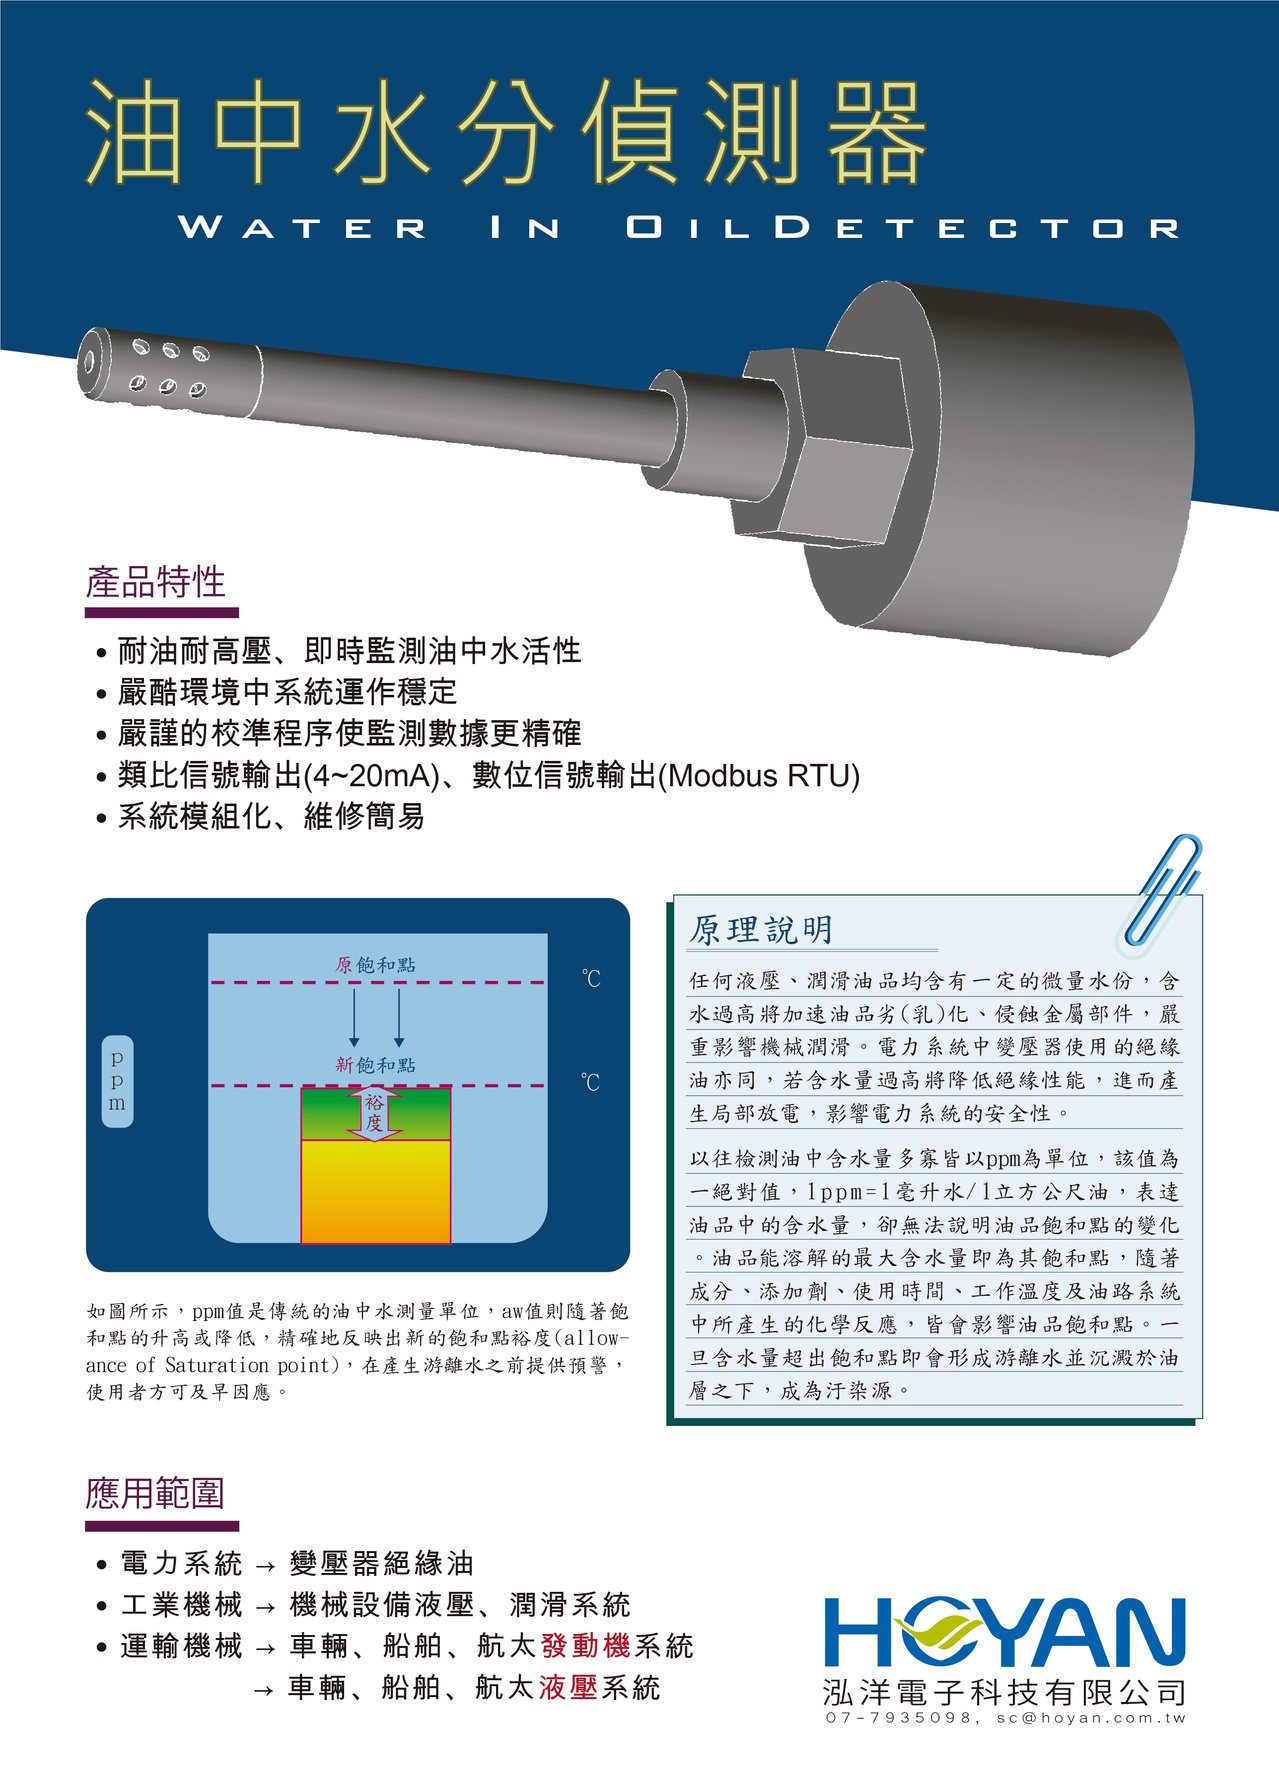 油中水分偵測器可用於預警液壓系統的油中水活性變化。業者/提供。